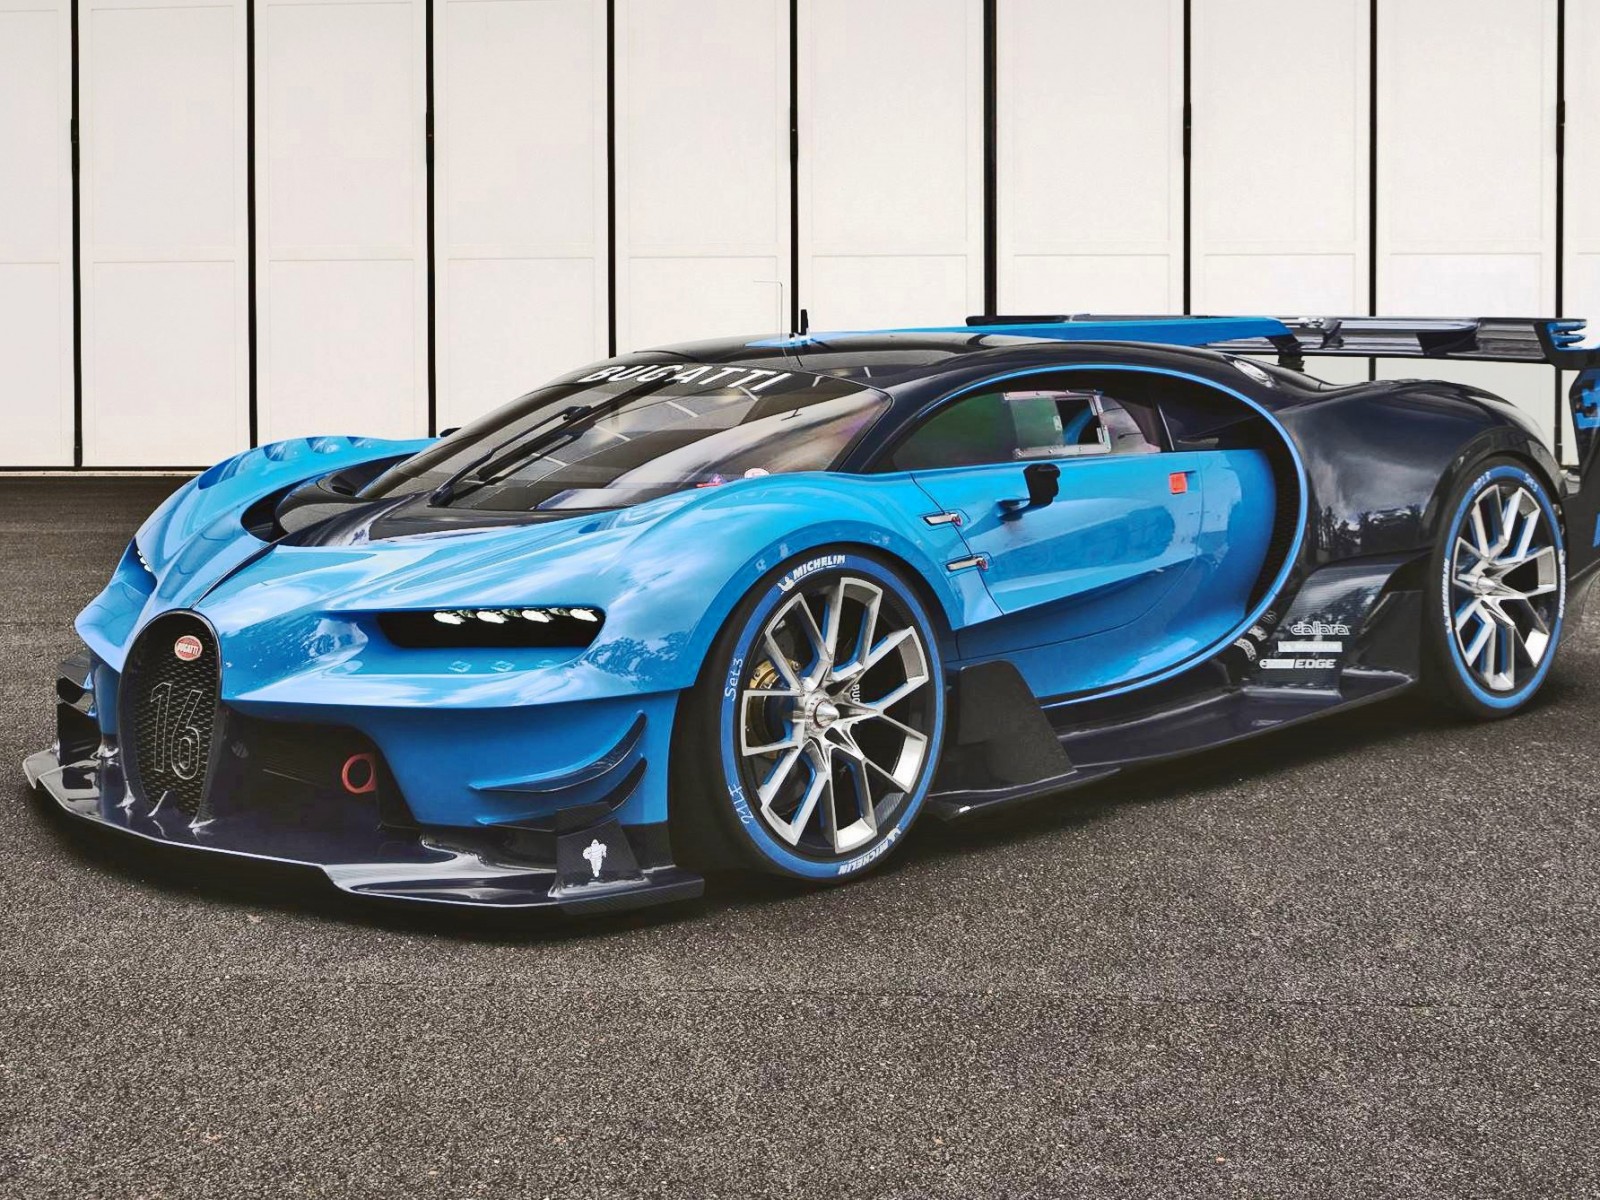 2015 Bugatti Vision Gran Turismo Concept